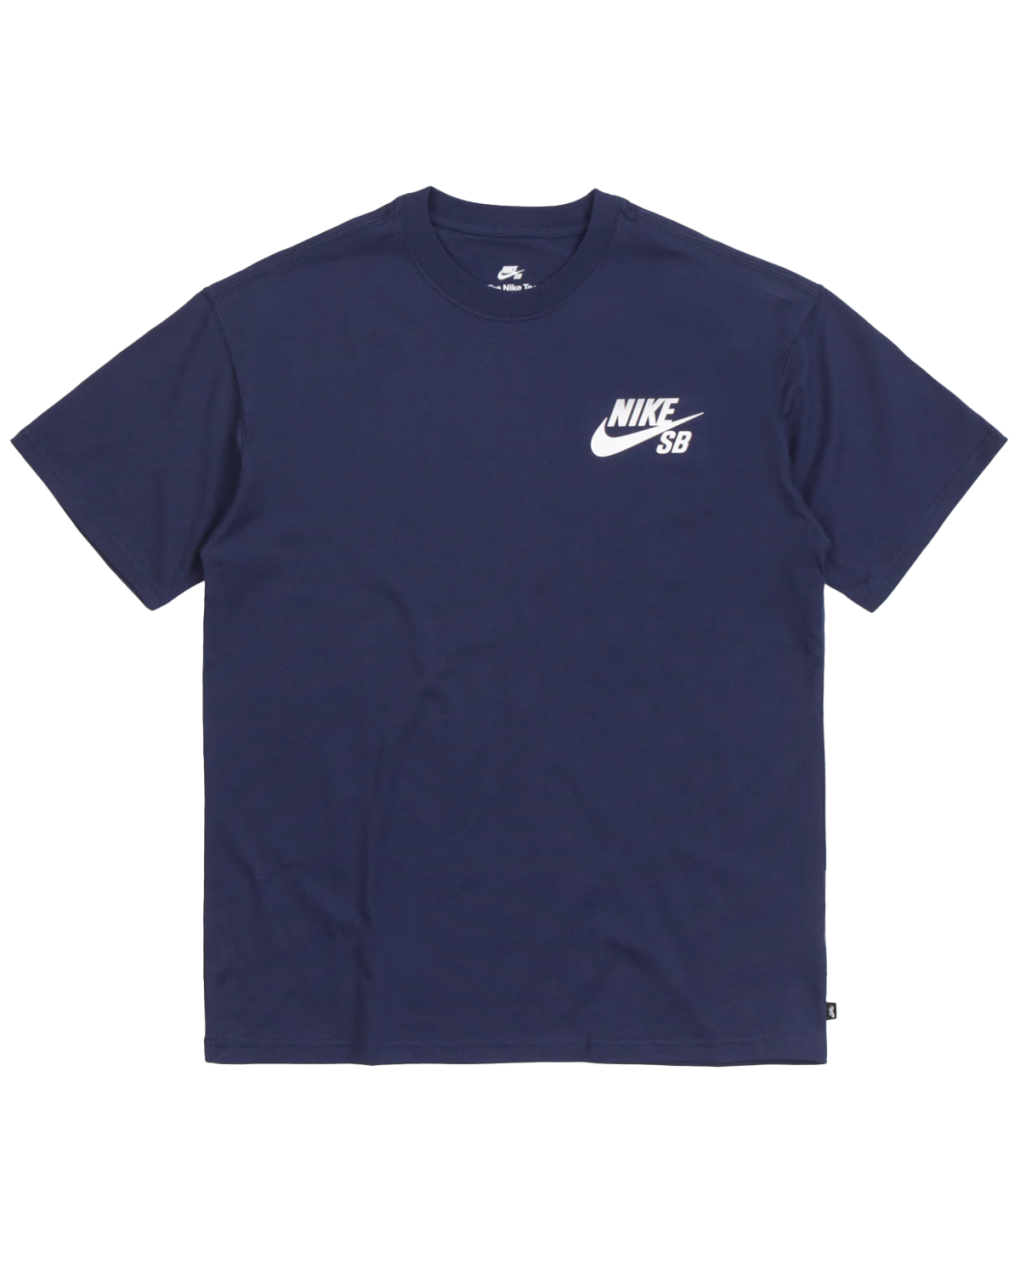 Sidewalk Skateshop - T-shirts - Nike SB - Logo Tee